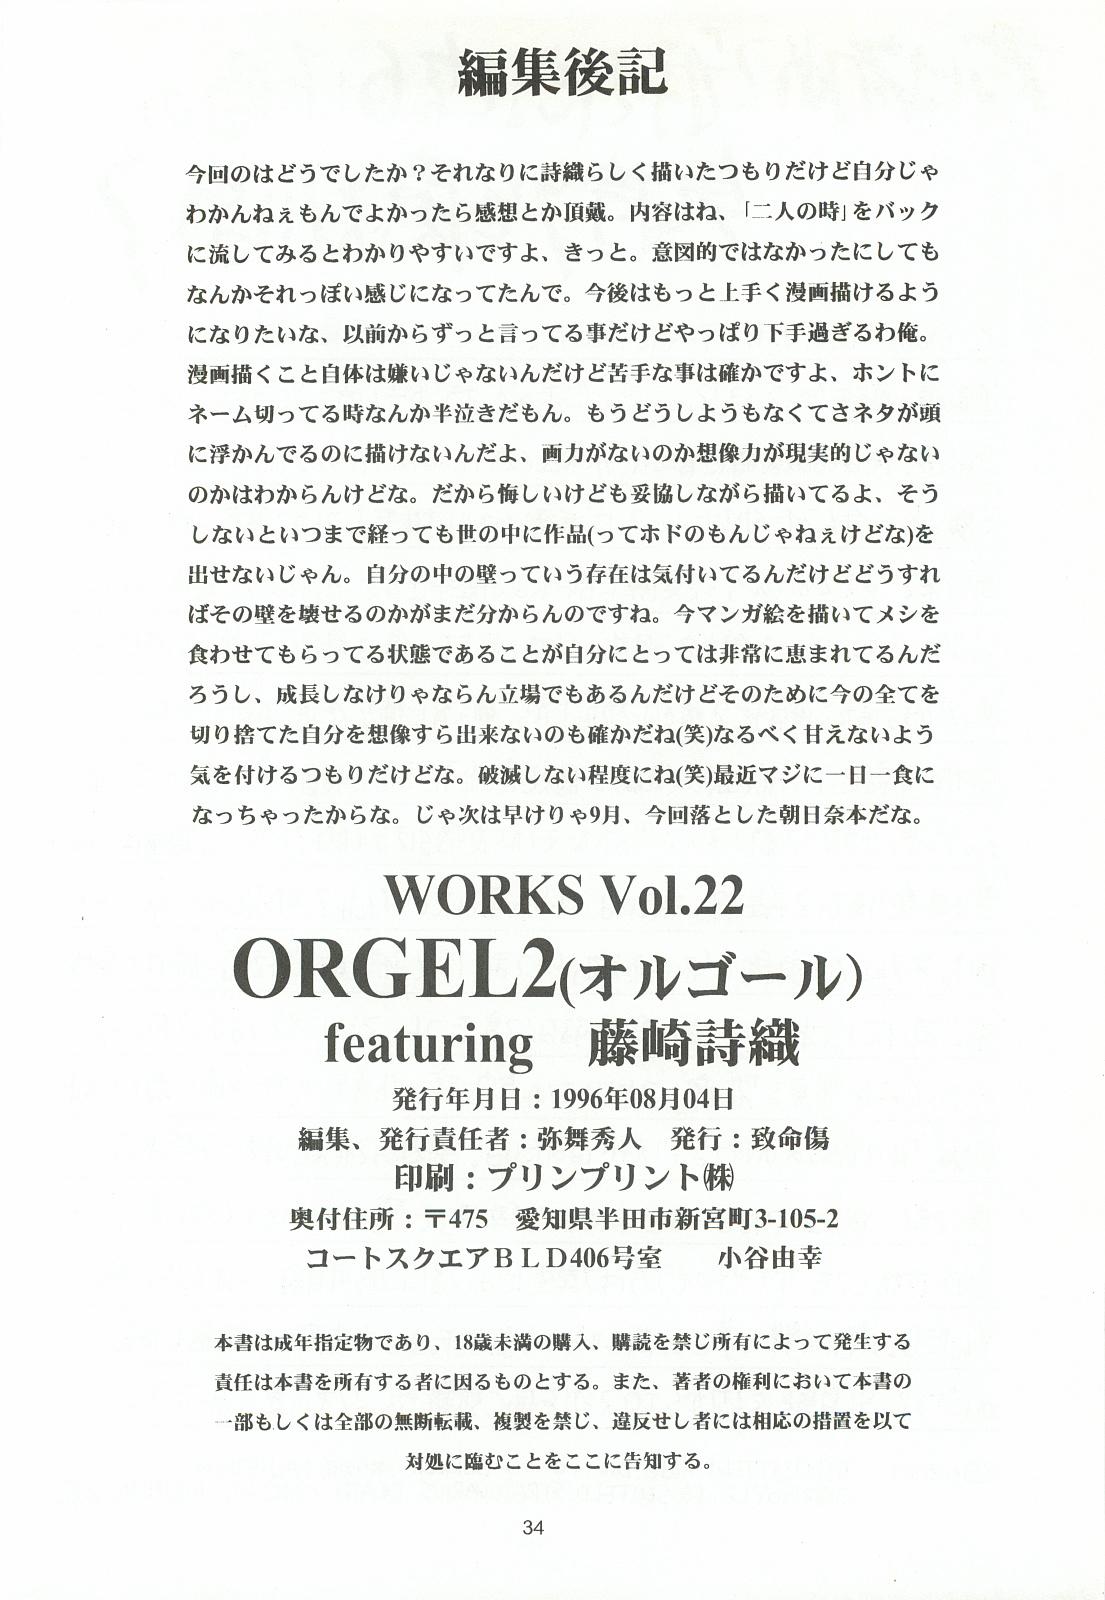 ORGEL 2 featuring Fujisaki Shiori 32